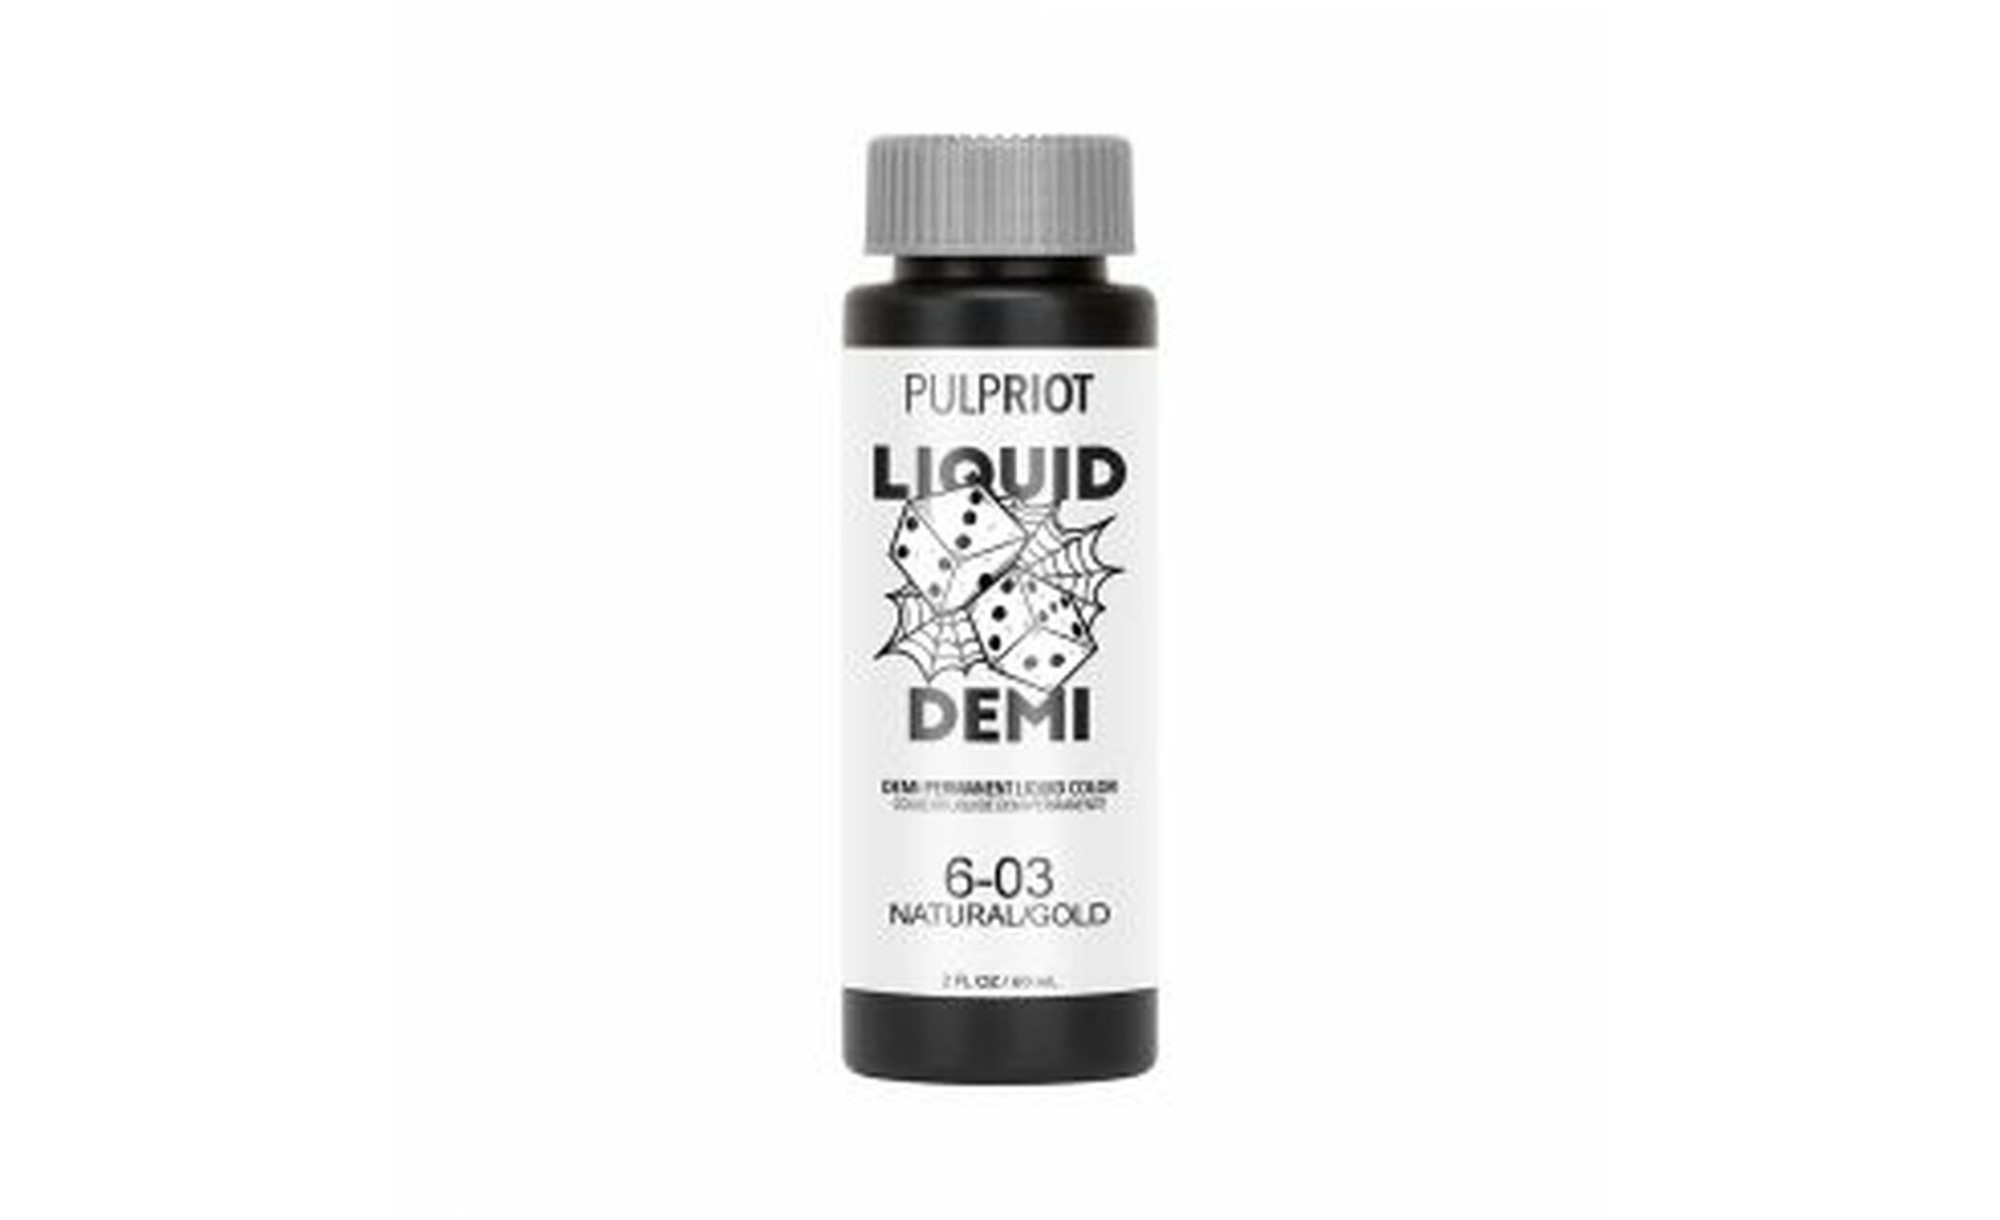 Pulp Riot Liquid Demi Natural Gold 6.03